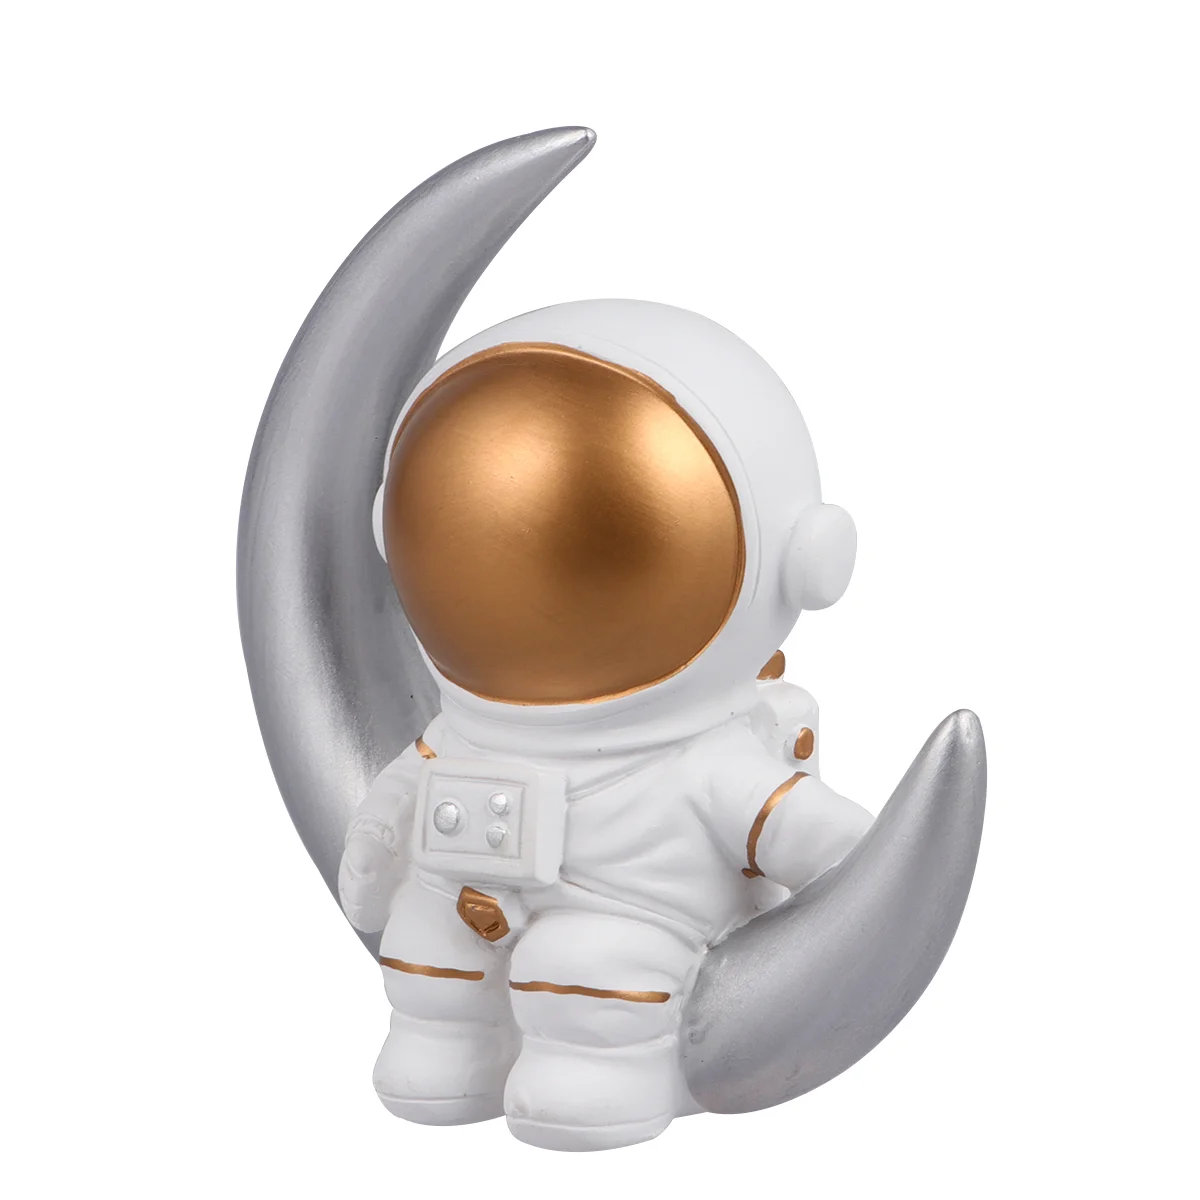 

Статуэтка из эпоксидной смолы для украшения торта в виде астронавта, игрушечная фигурка, модель космического человека, Декоративная скульптура, декор для стола, искусственные статуи автомобиля, космос